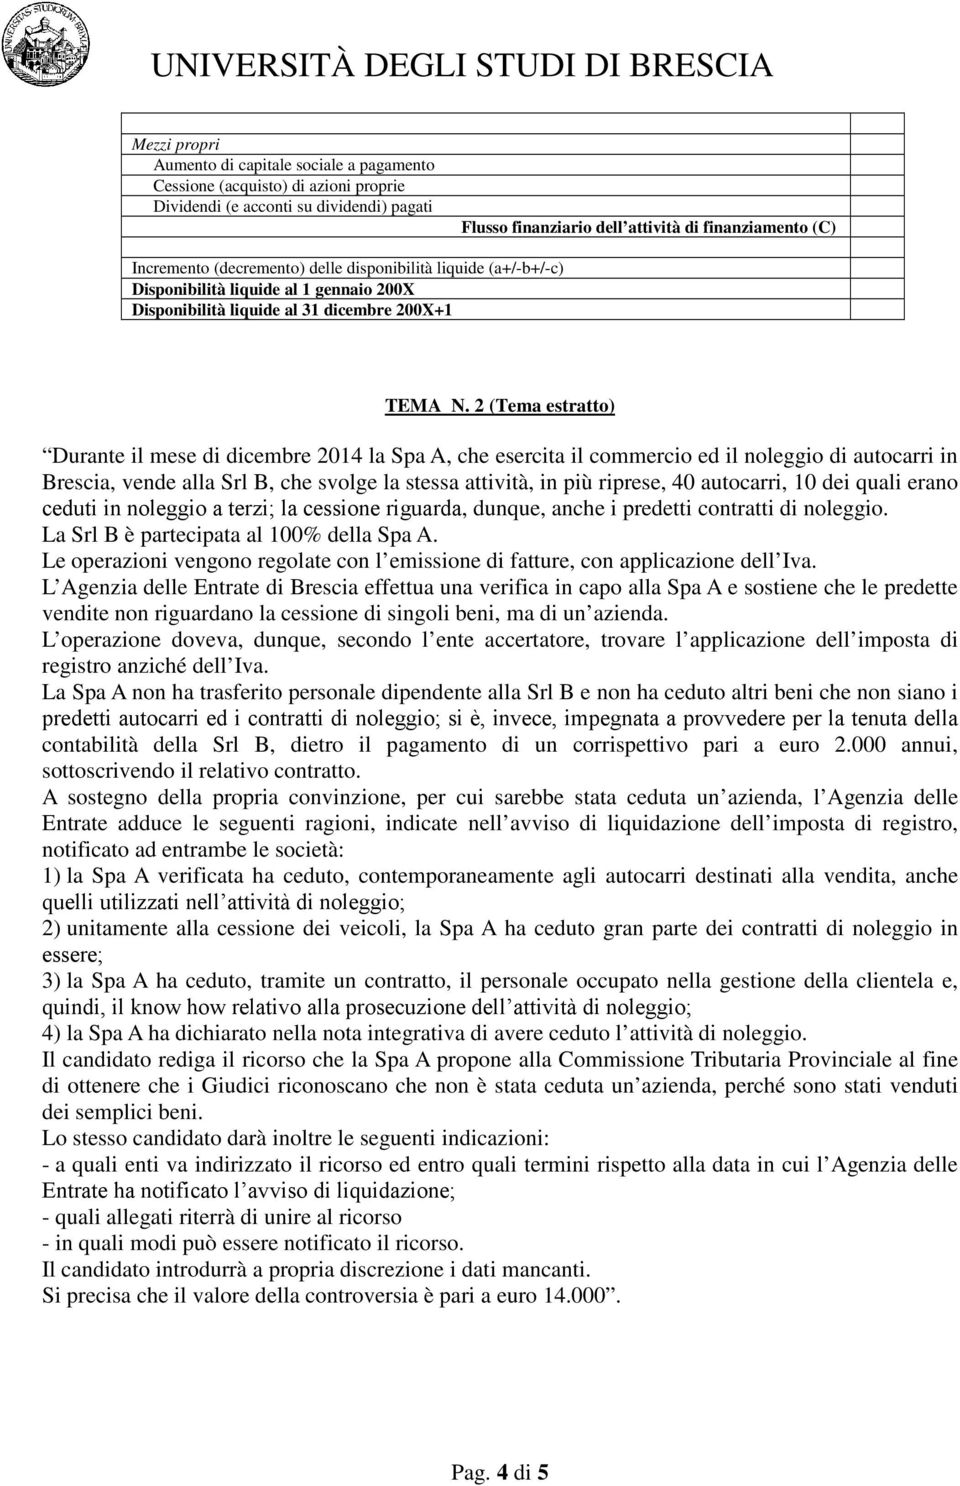 2 (Tema estratto) Durante il mese di dicembre 2014 la Spa A, che esercita il commercio ed il noleggio di autocarri in Brescia, vende alla Srl B, che svolge la stessa attività, in più riprese, 40